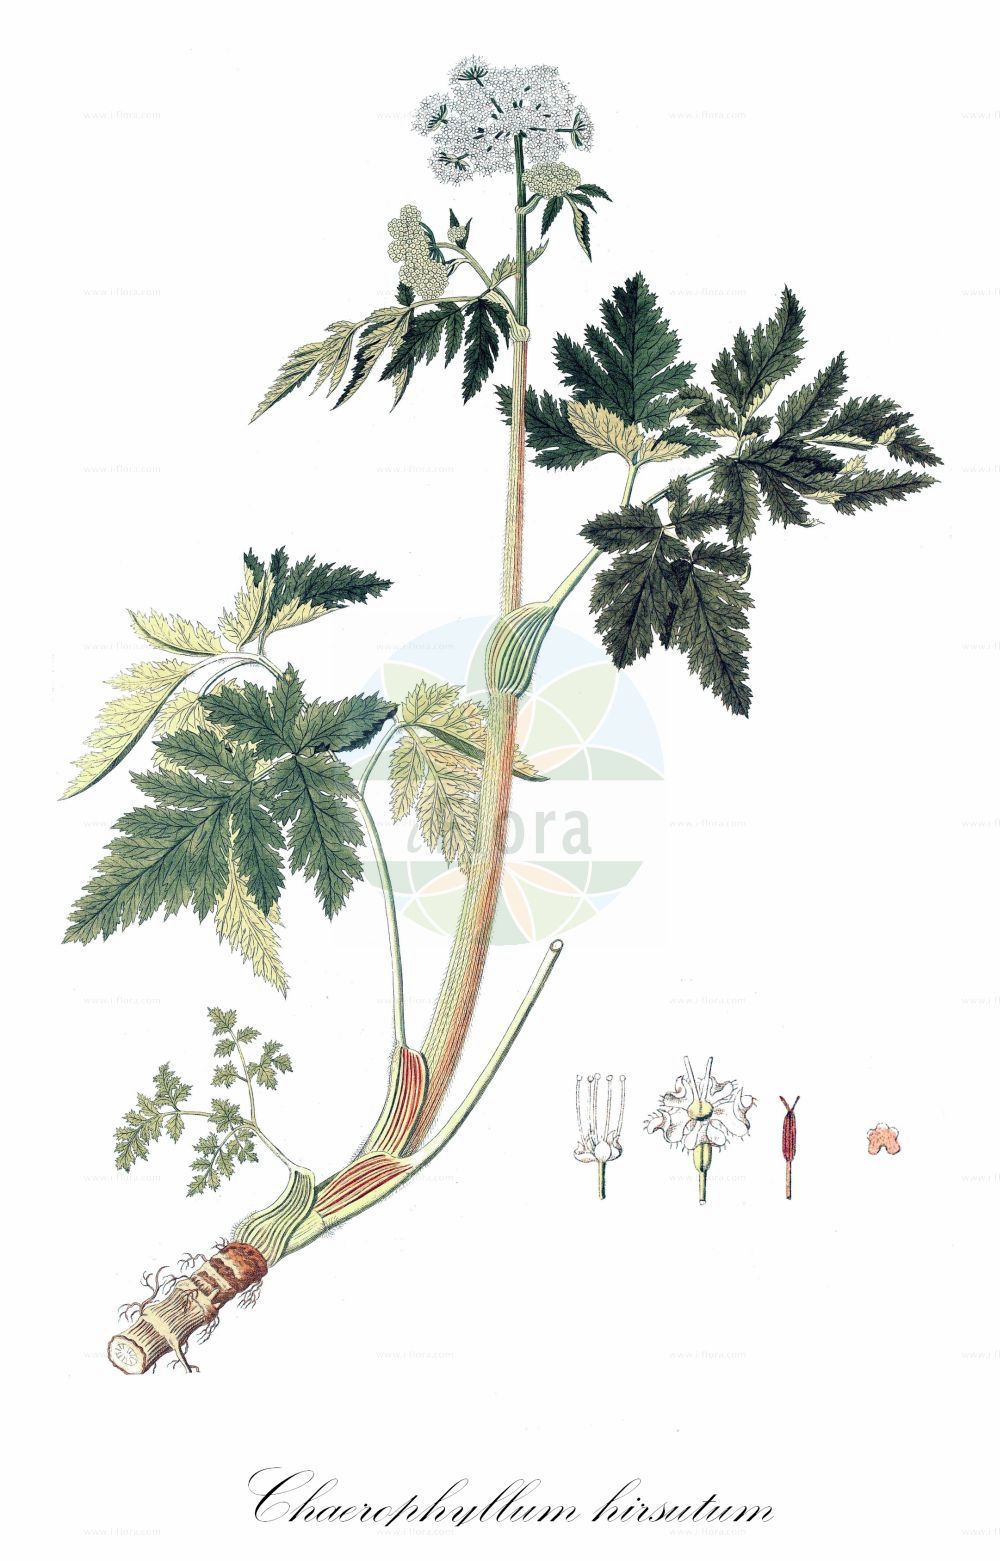 Historische Abbildung von Chaerophyllum hirsutum (Behaarter Kälberkropf - Hairy Chervil). Das Bild zeigt Blatt, Bluete, Frucht und Same. ---- Historical Drawing of Chaerophyllum hirsutum (Behaarter Kälberkropf - Hairy Chervil). The image is showing leaf, flower, fruit and seed.(Chaerophyllum hirsutum,Behaarter Kälberkropf,Hairy Chervil,Chaerophyllum cicutaria,Chaerophyllum hirsutum,Behaarter Kaelberkropf,Alpen-Kaelberkropf,Bach-Kaelberkropf,Berg-Kaelberkropf,Berg-Kerbel,Gewoehnlicher Rauhhariger Kaelberkropf,Rauhaariger Kaelberkropf,Villars Kerbel,Wimper-Kaelberkropf,Hairy Chervil,Chaerophyllum,Kälberkropf,Chervil,Apiaceae,Doldengewächse,Carrot family,Blatt,Bluete,Frucht,Same,leaf,flower,fruit,seed)